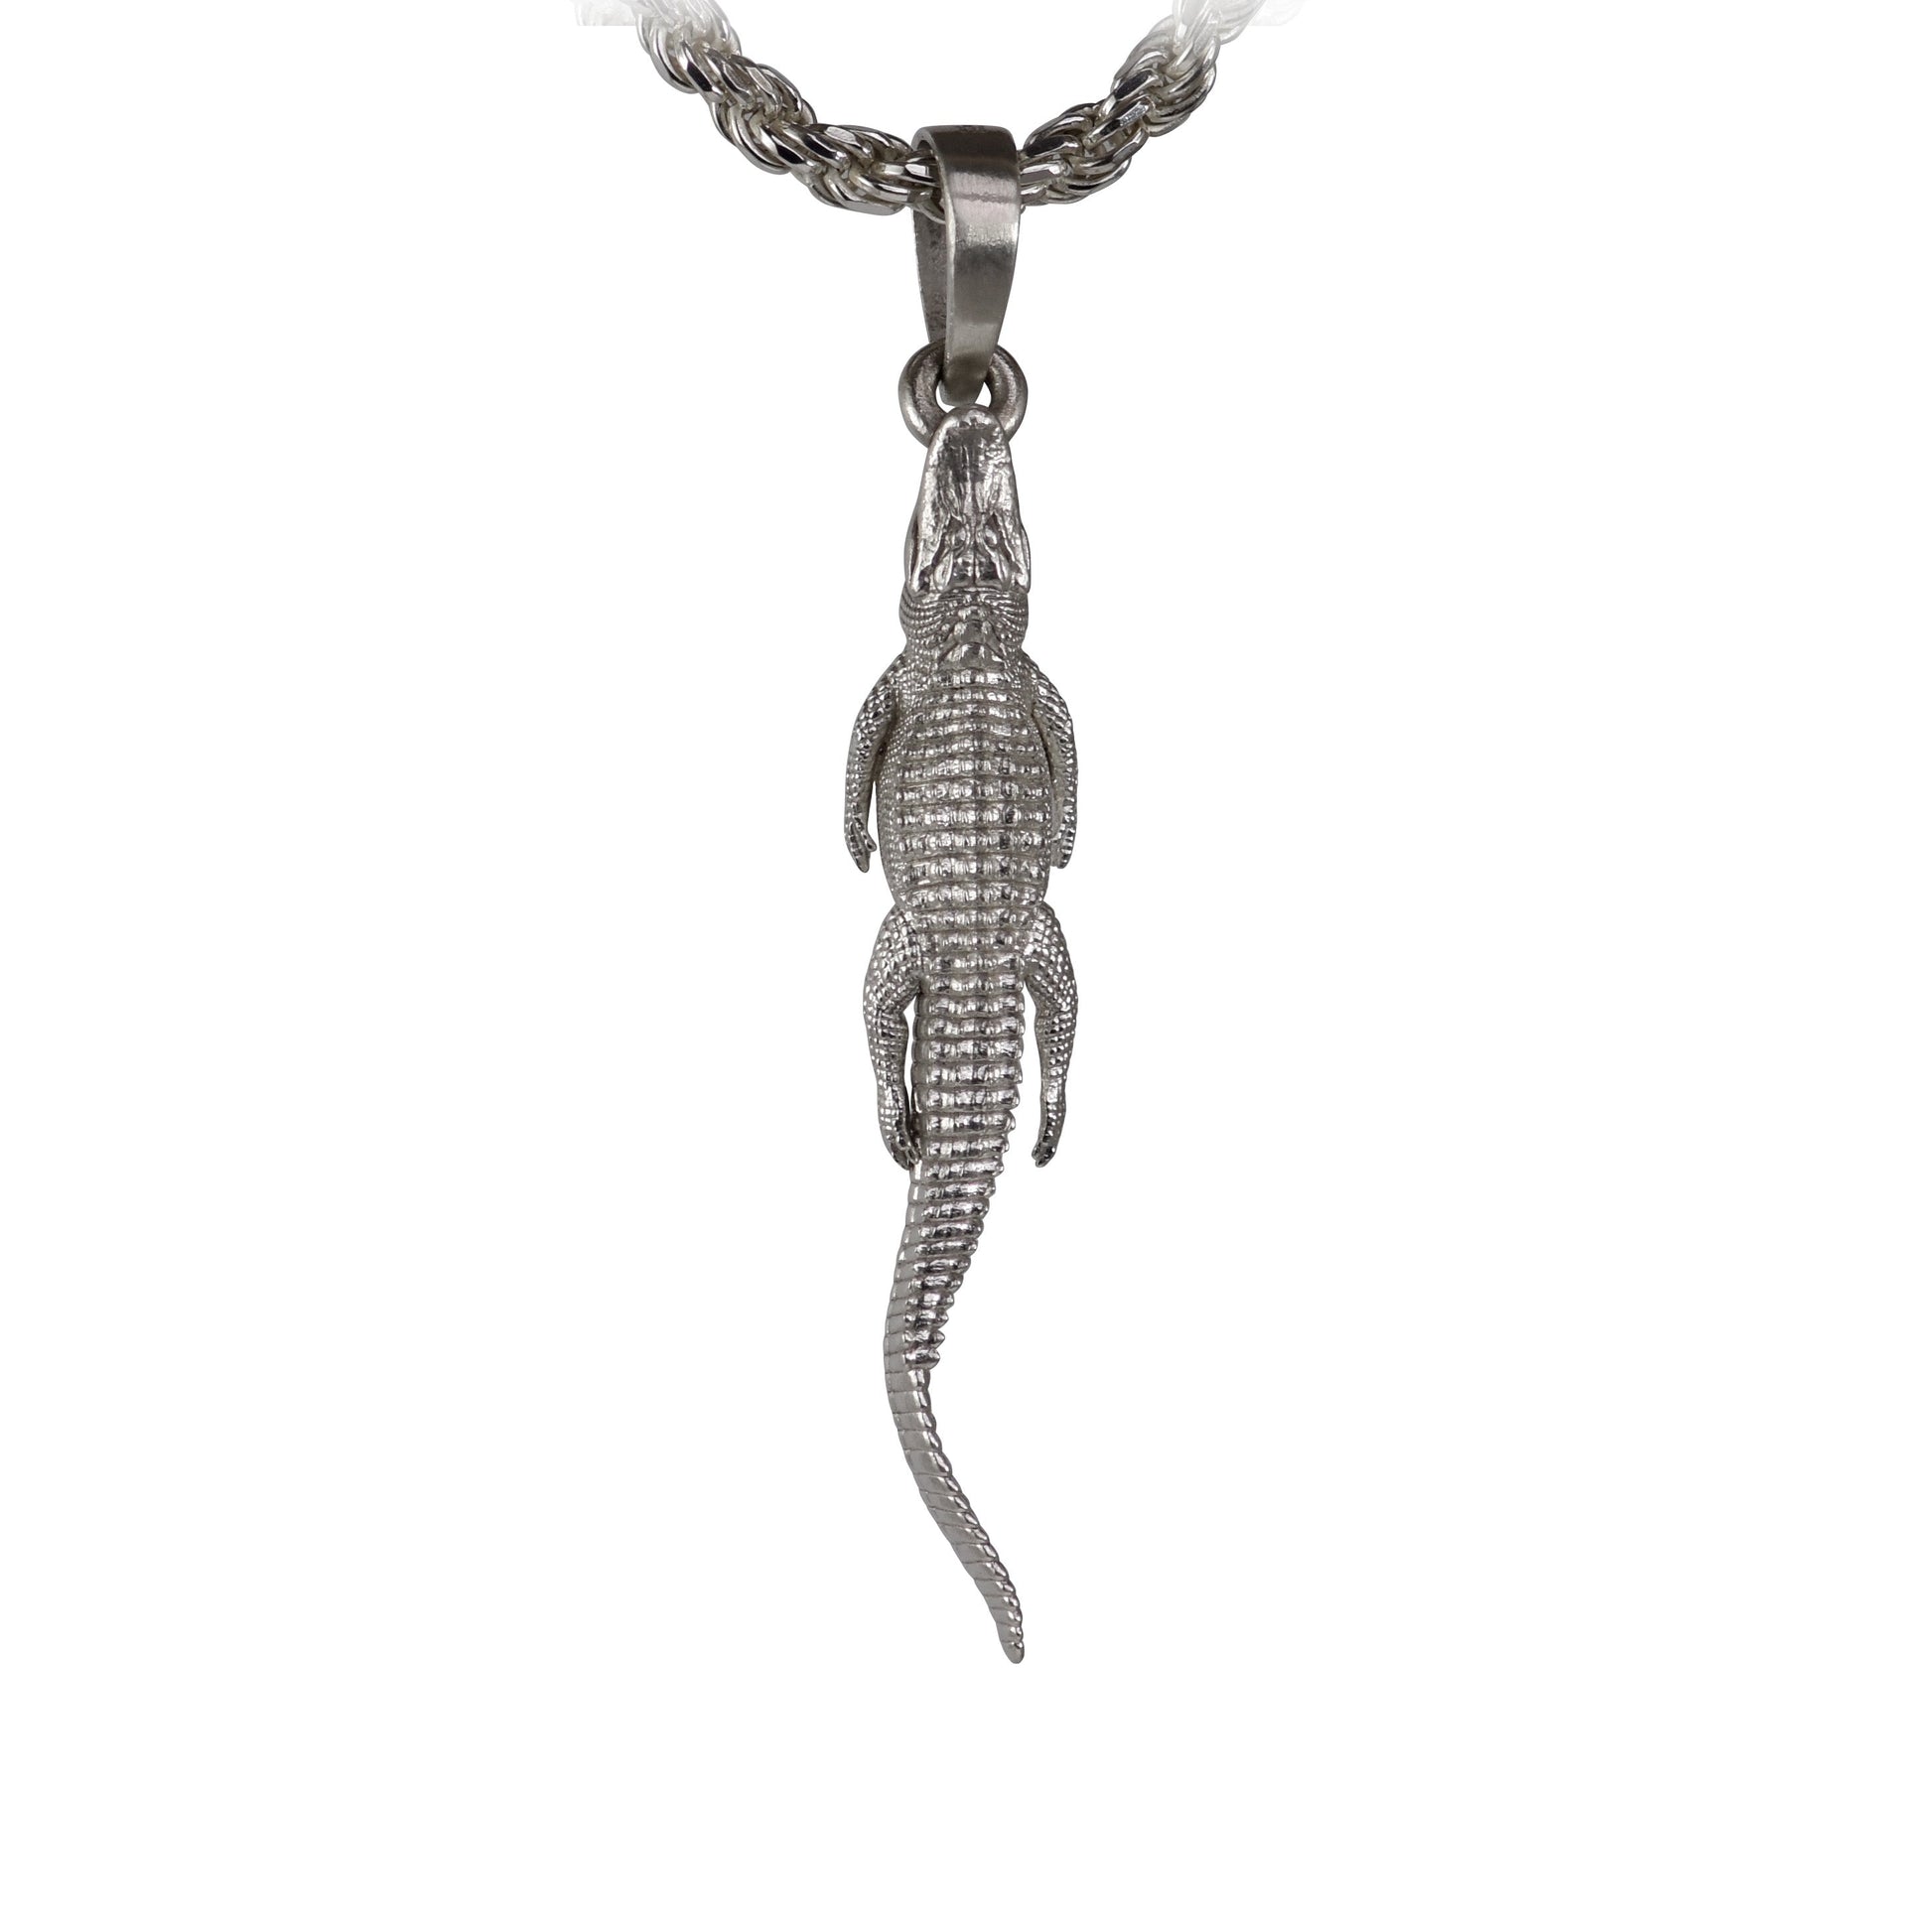 https://www.seashurjewelry.com/cdn/shop/files/American-Alligator-on-the-Hunt-Pendant-Large.jpg?v=1693449191&width=1946